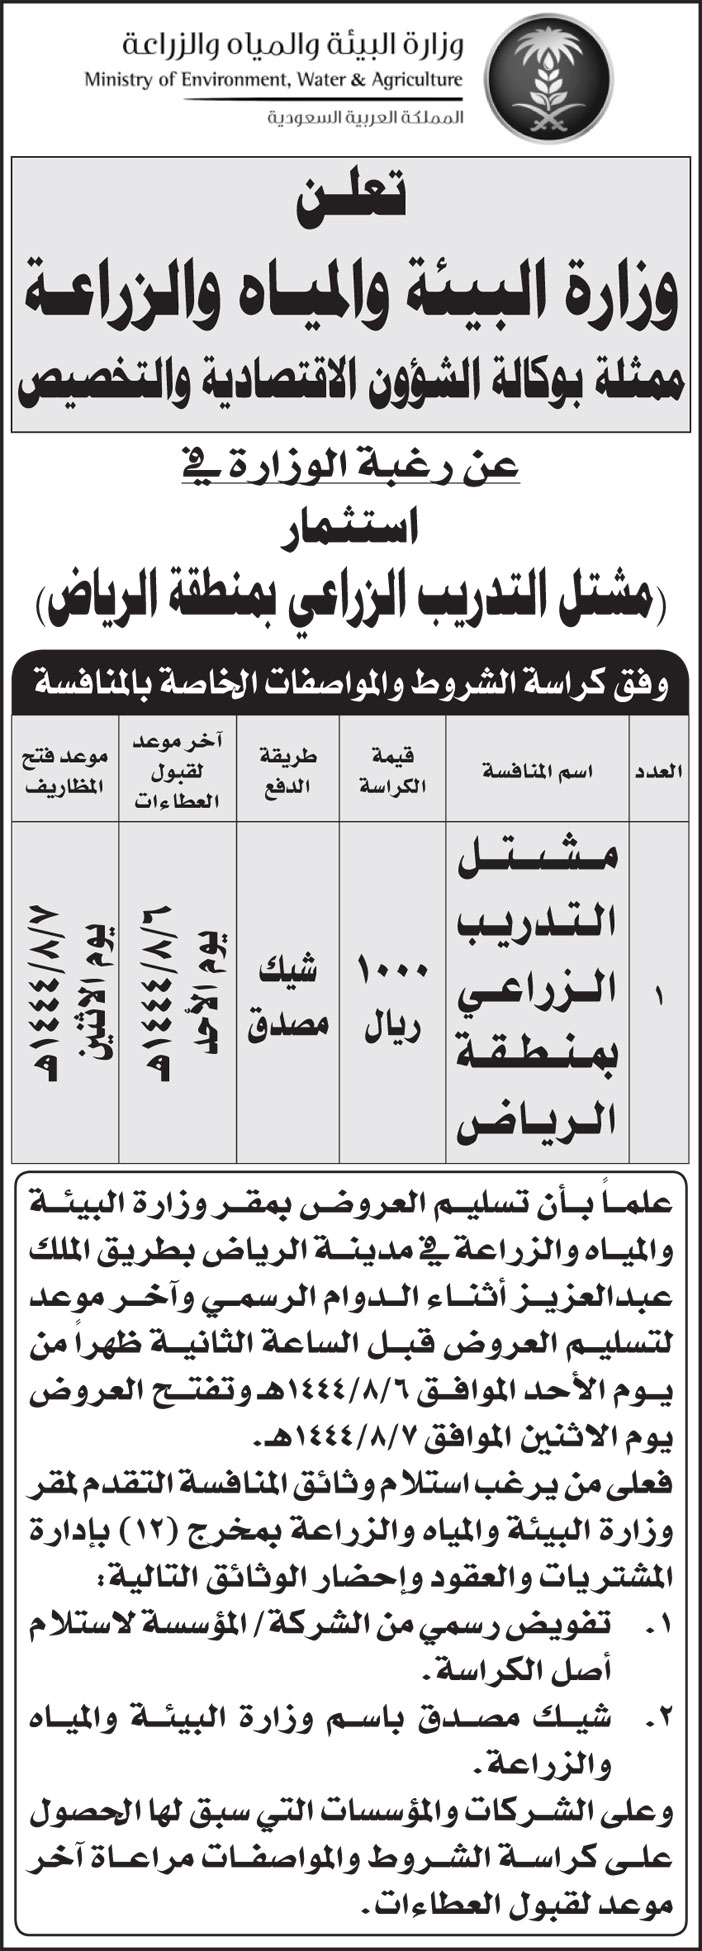 وزارة البيئة والمياه والزراعة ترغب في استثمار (مشتل التدريب الزراعي بمنطقة الرياض) 